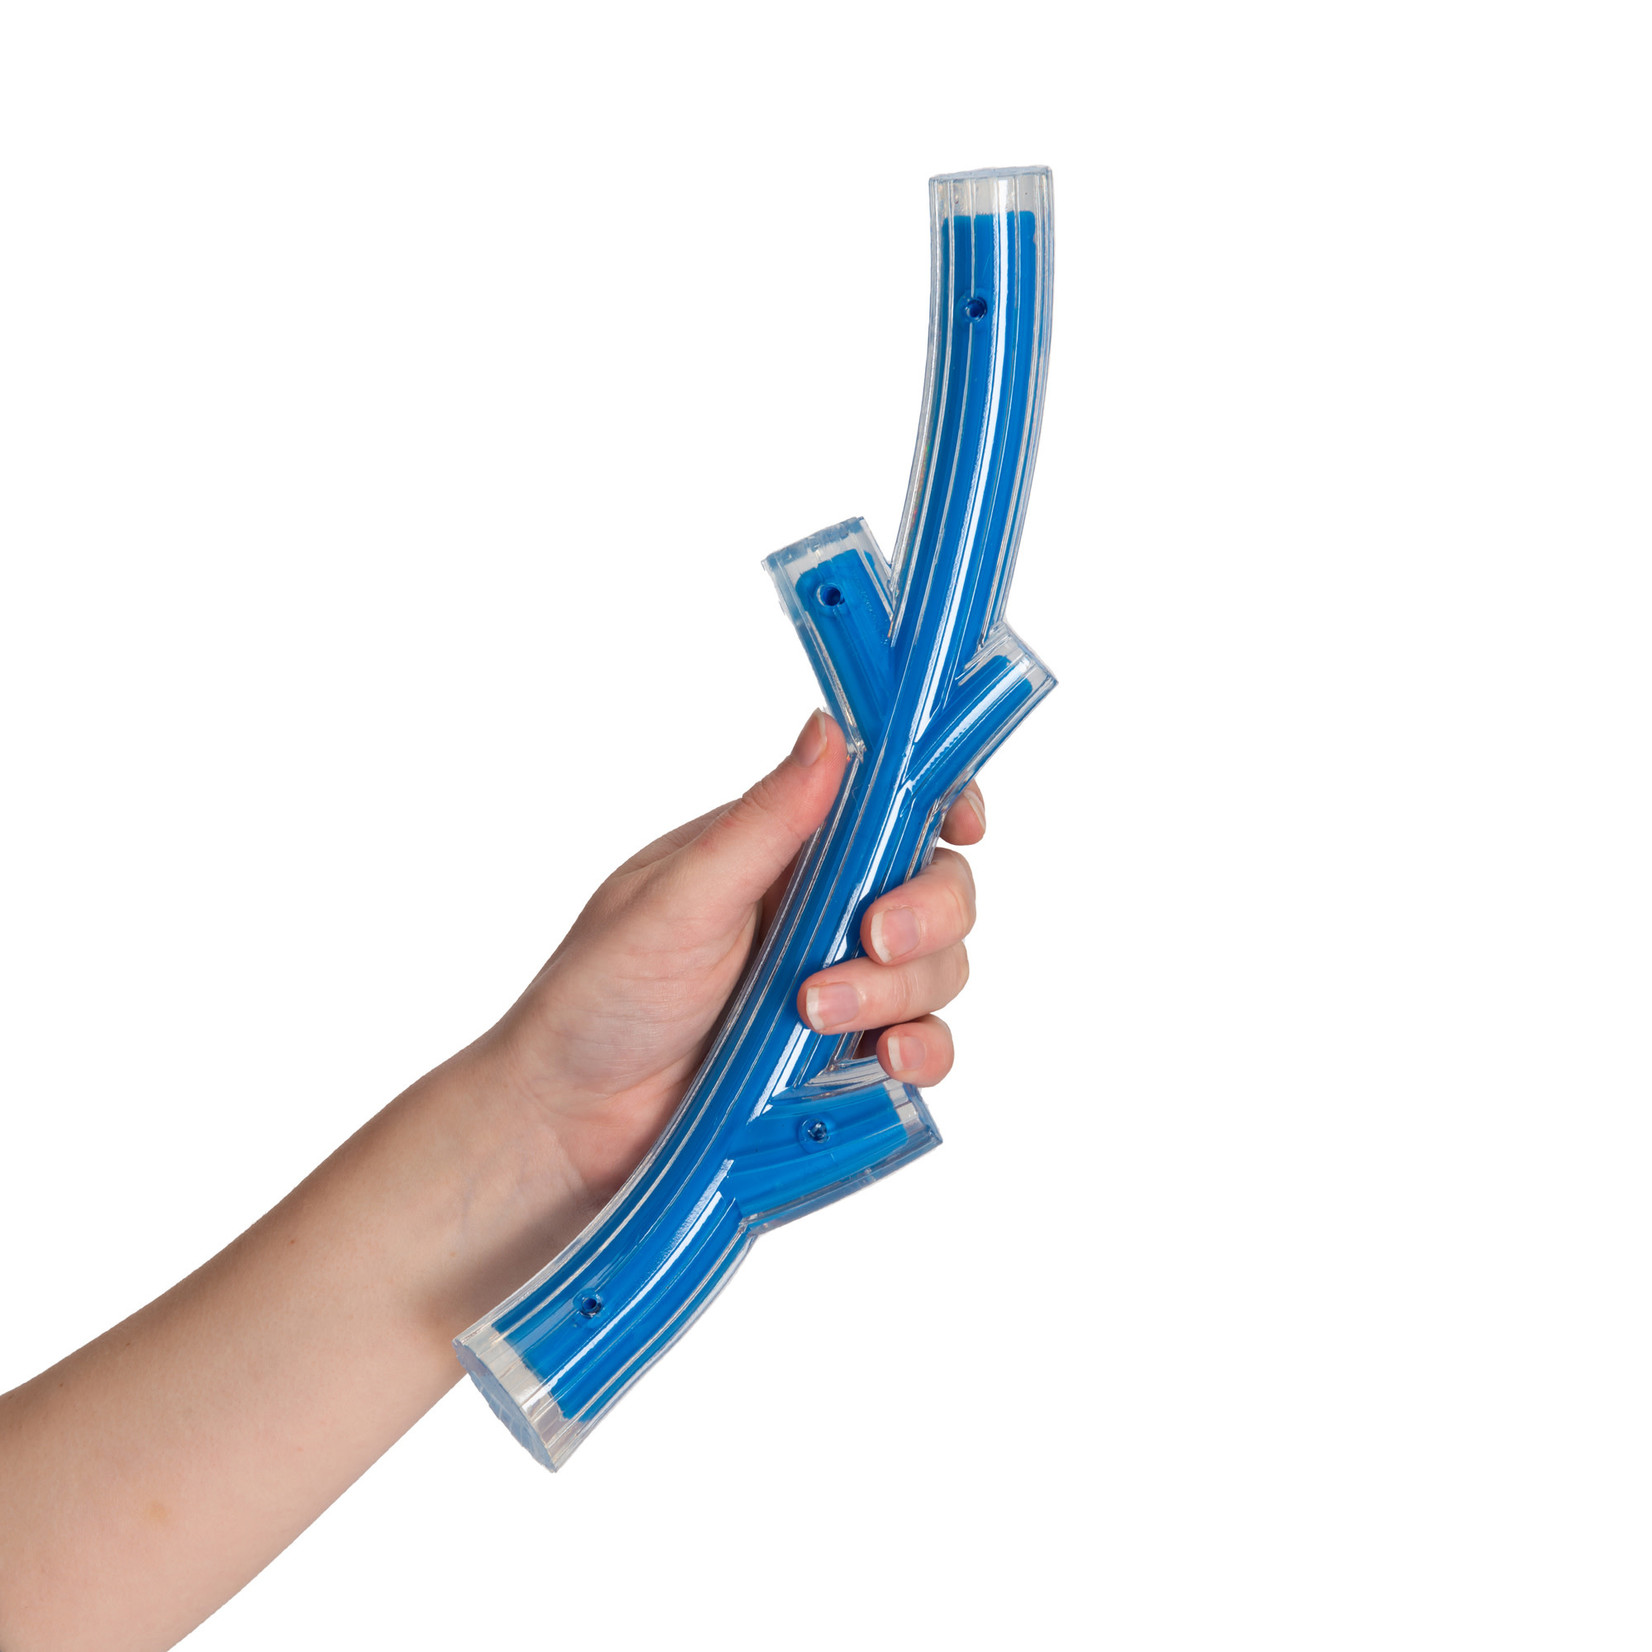 ZEUS Zeus Duo Stick - Bacon Scent - Blue - 30 cm (12 in)